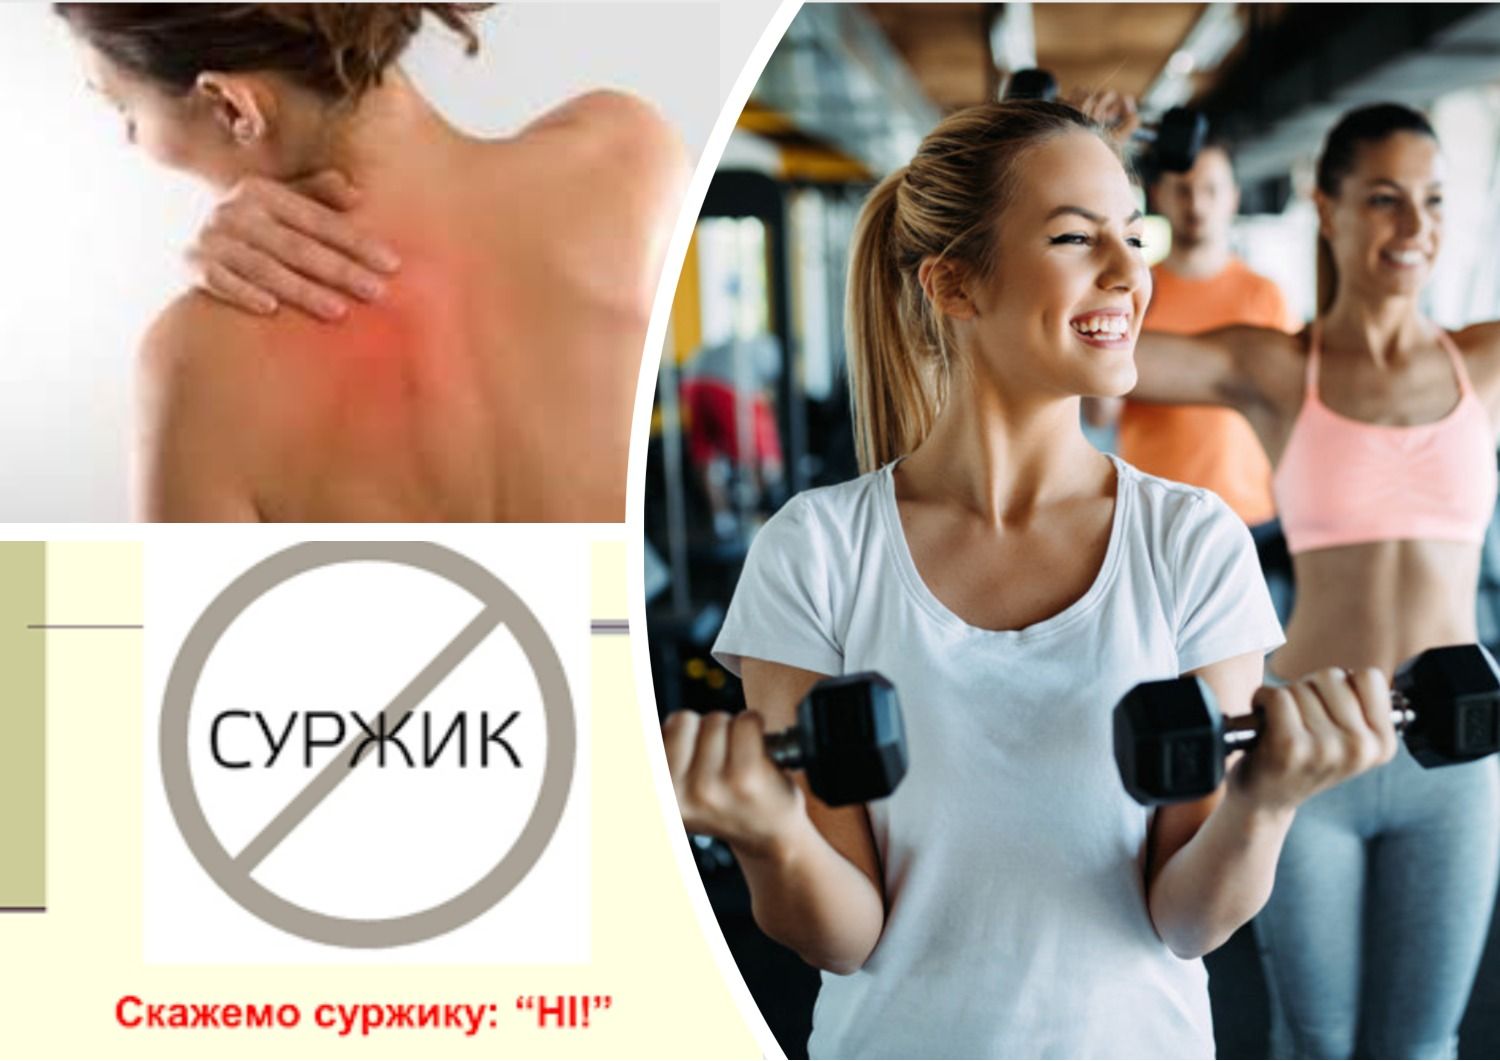 Антисуржик - как правильно говорить по-украински о мышцах и частях тела - 24 Канал - Образование